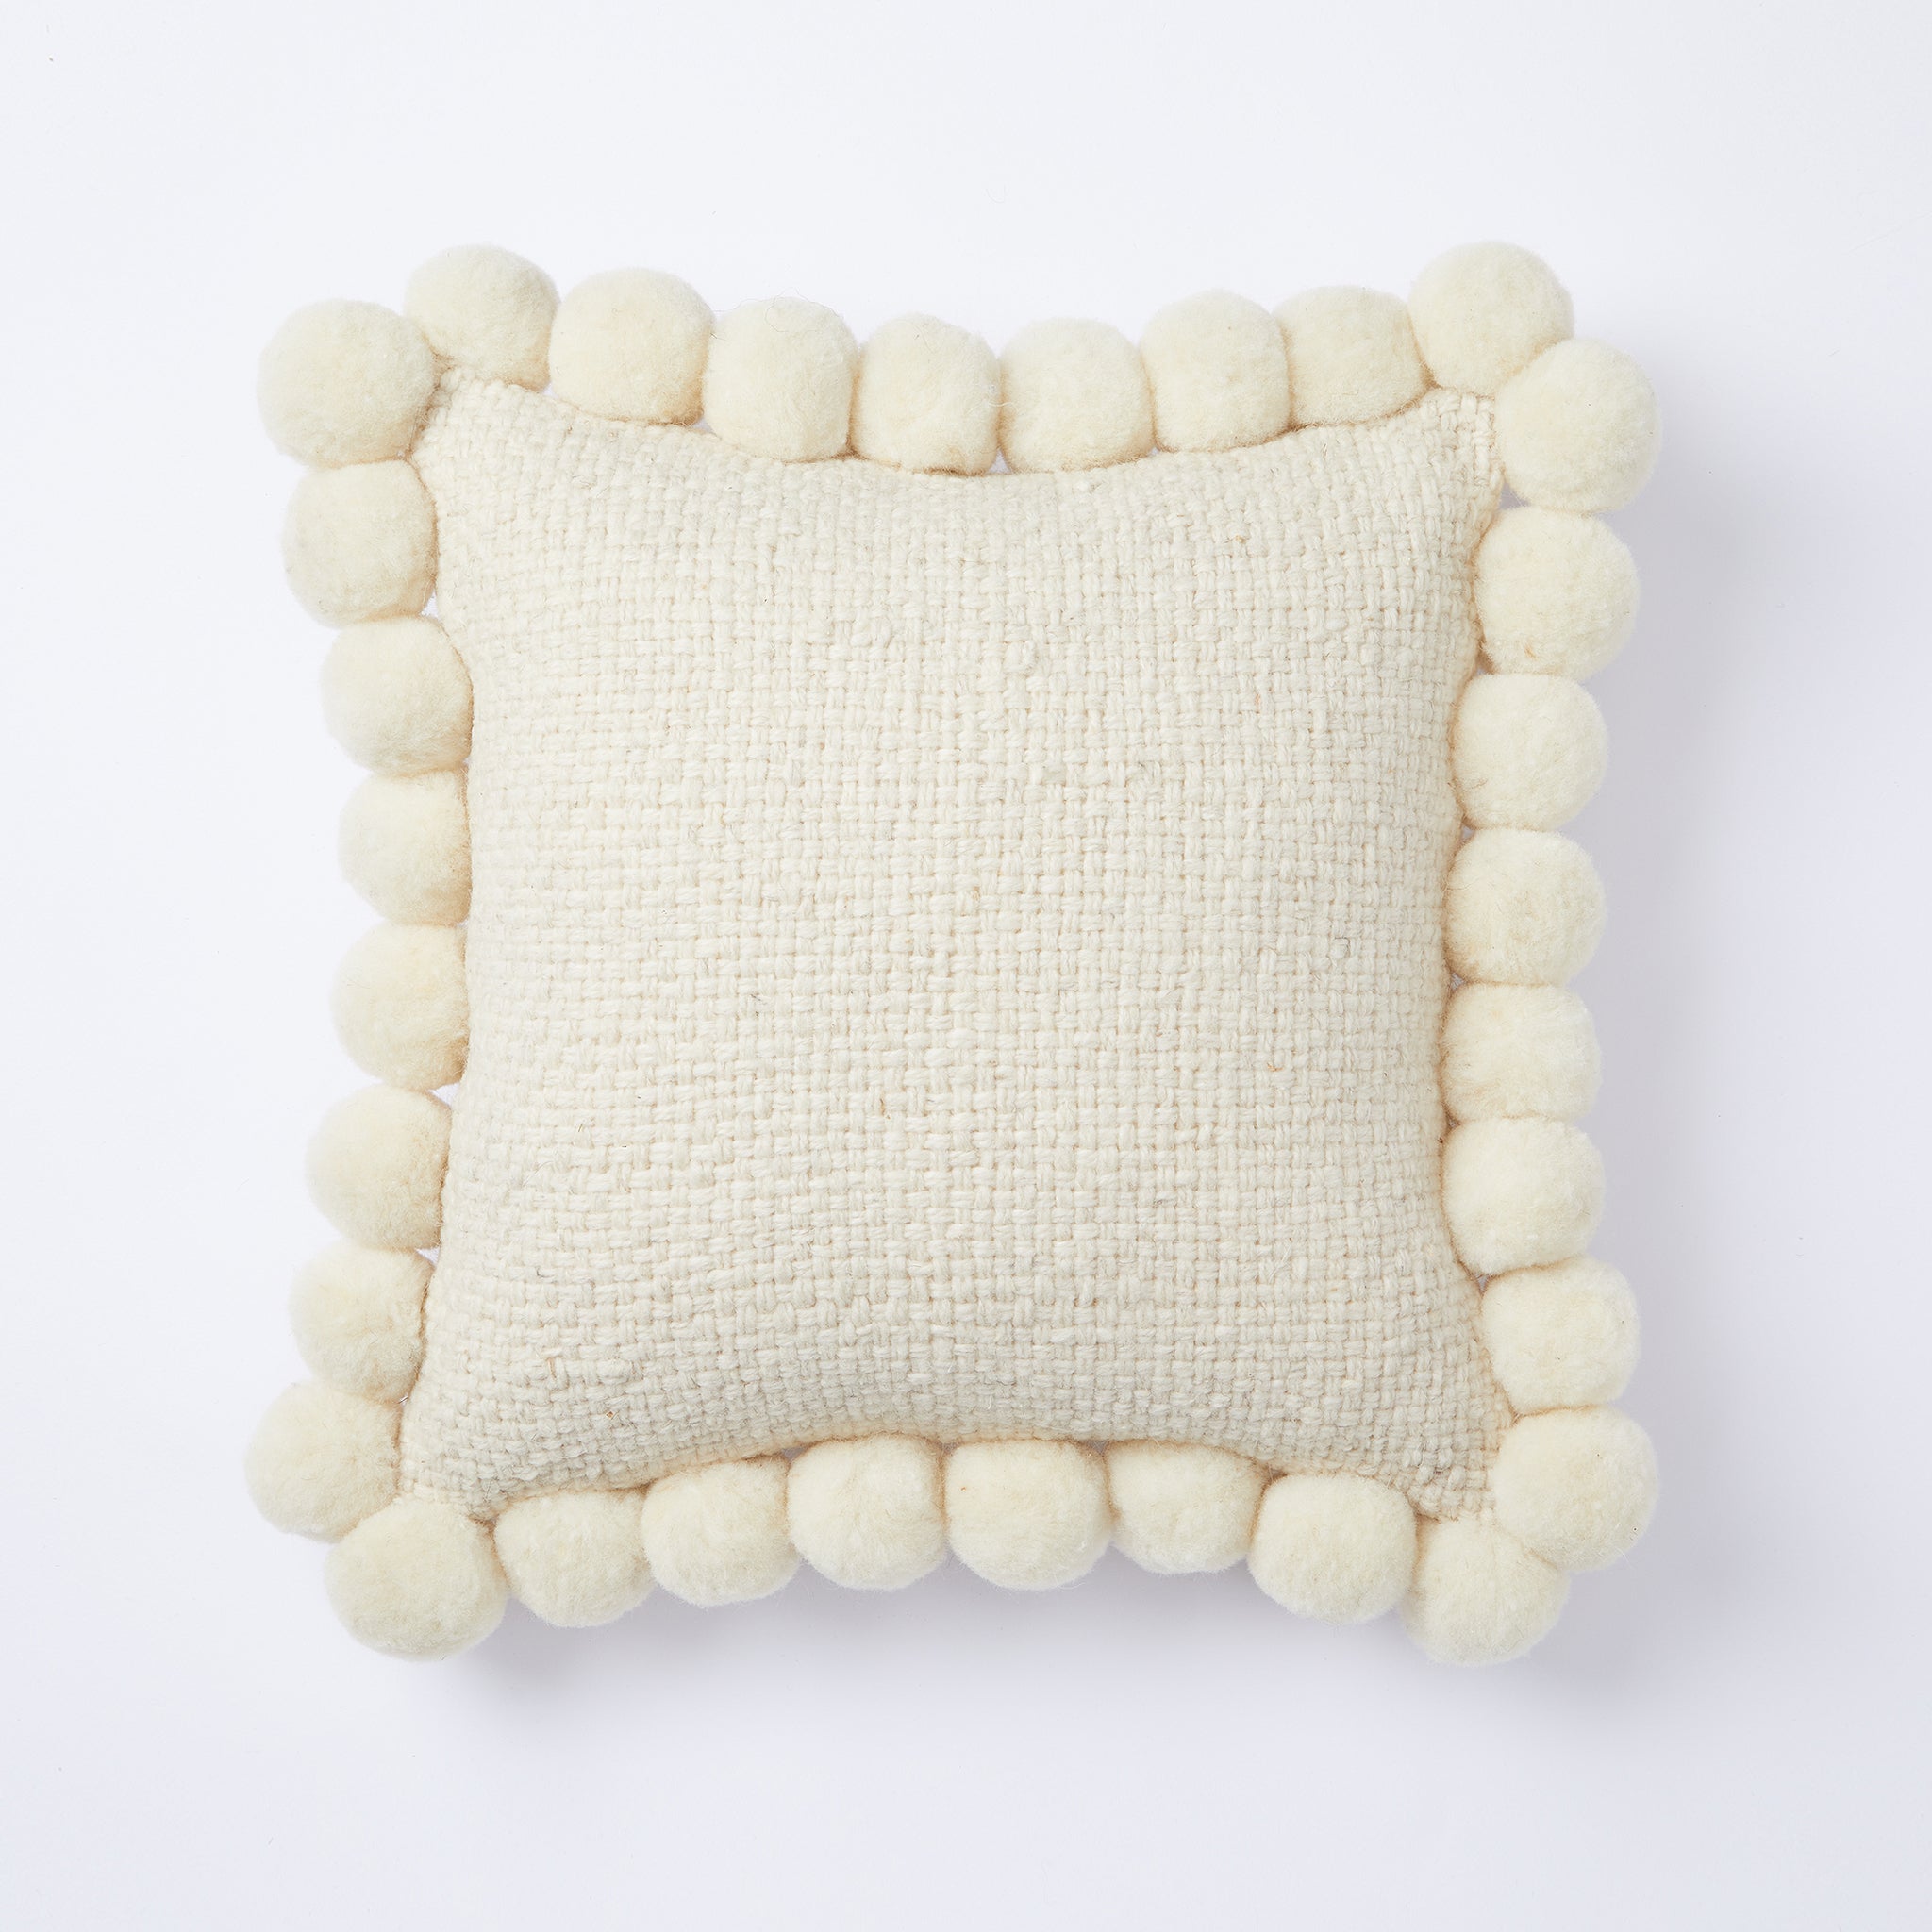 Ein toller Blickfang auf deinem Sofa oder in deinem Lieblingssessel. Individuelles, liebevoll von Hand hergestelltes BY NATIVE  Pom Pom Kissen aus 100% argentinischer Schurwolle.